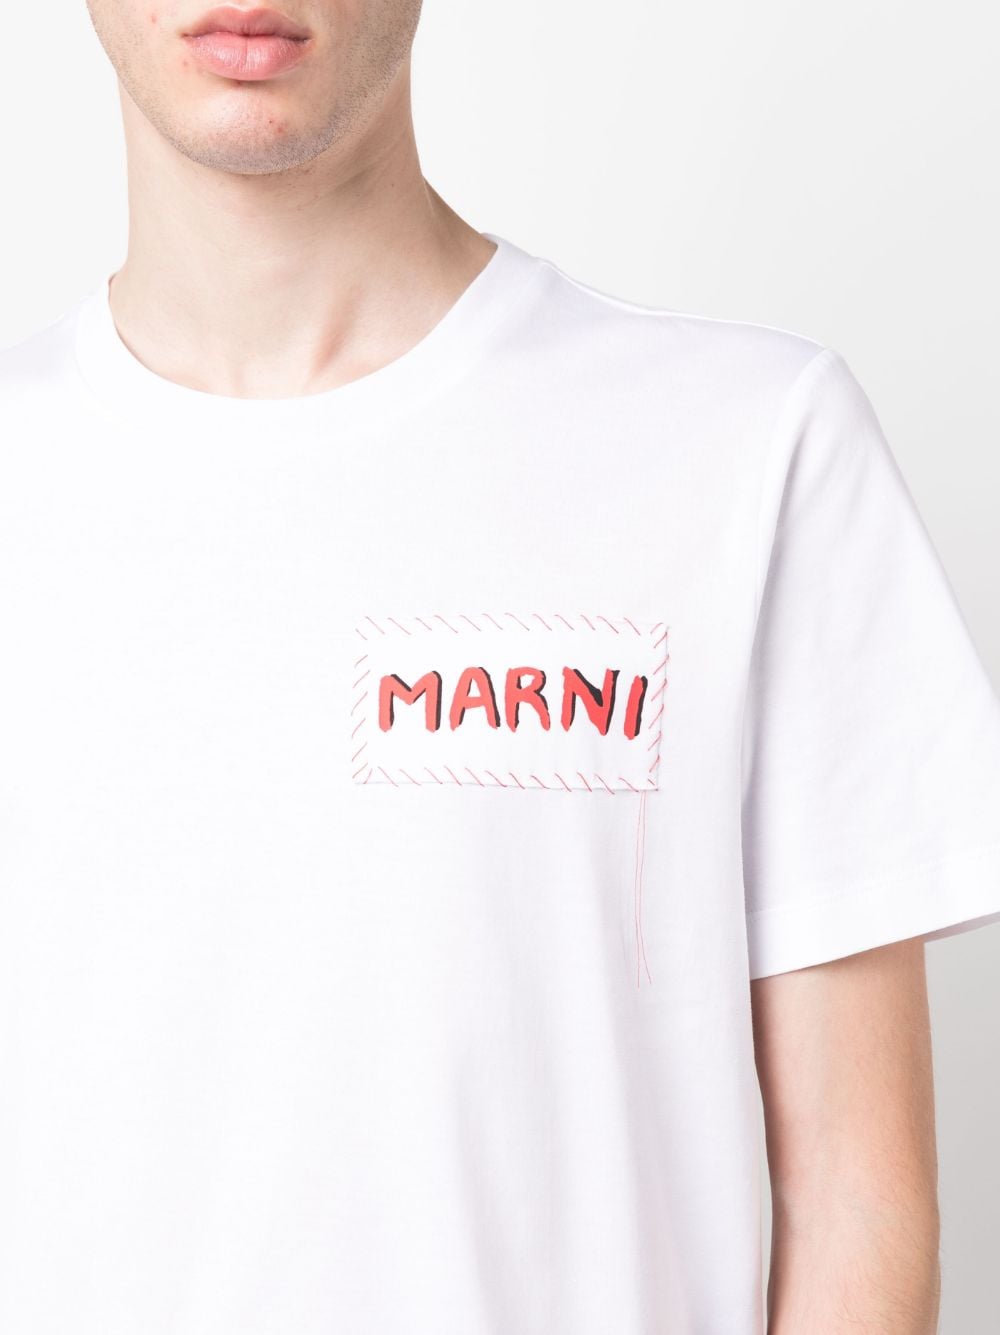 Marni ロゴ Tシャツ - Farfetch